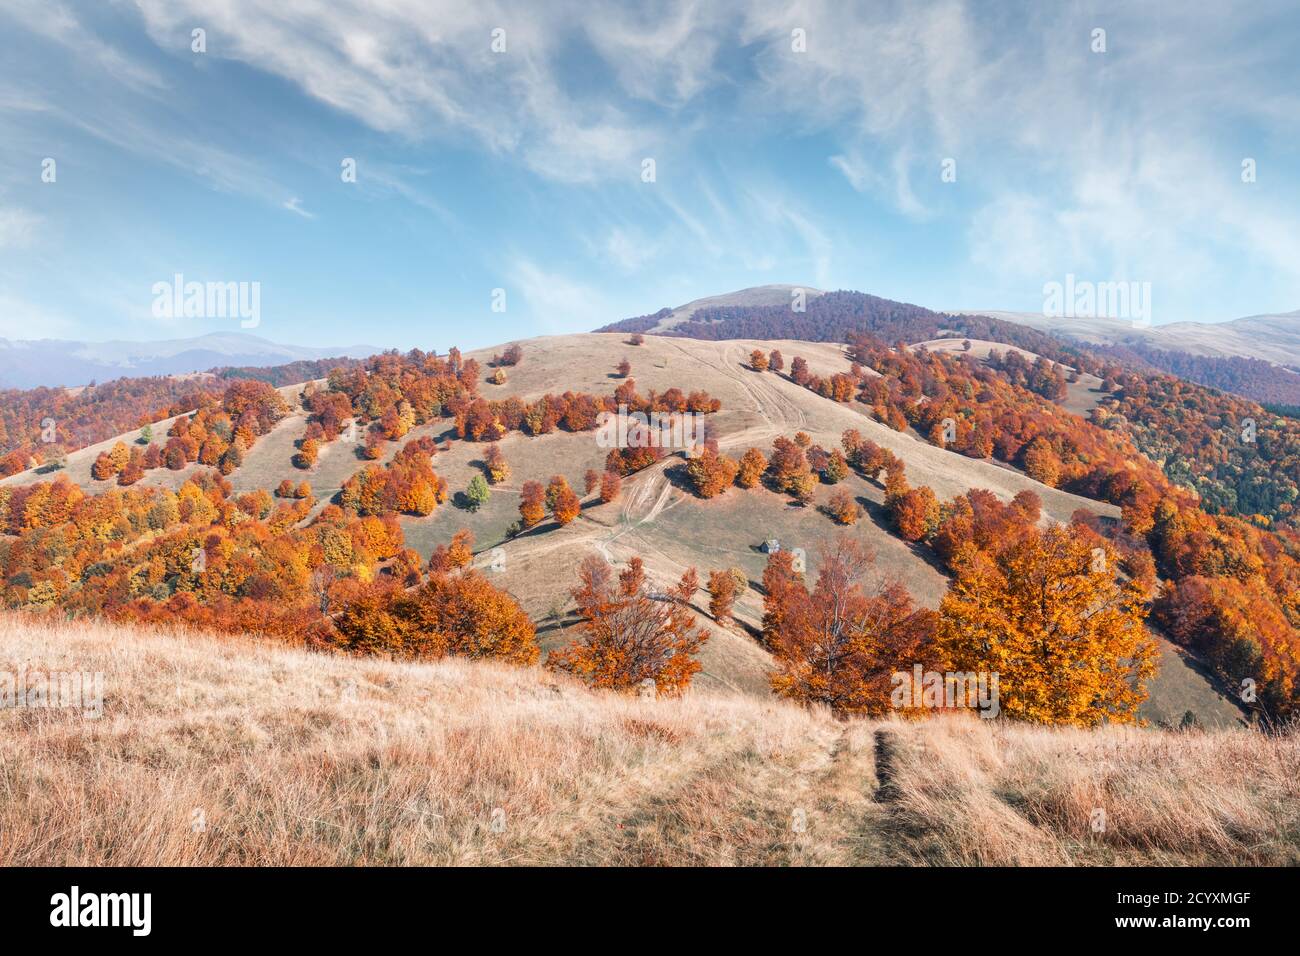 Automne pittoresque des montagnes avec des forêts de hêtres rouges dans les Carpates, l'Ukraine. Photographie de paysage Banque D'Images